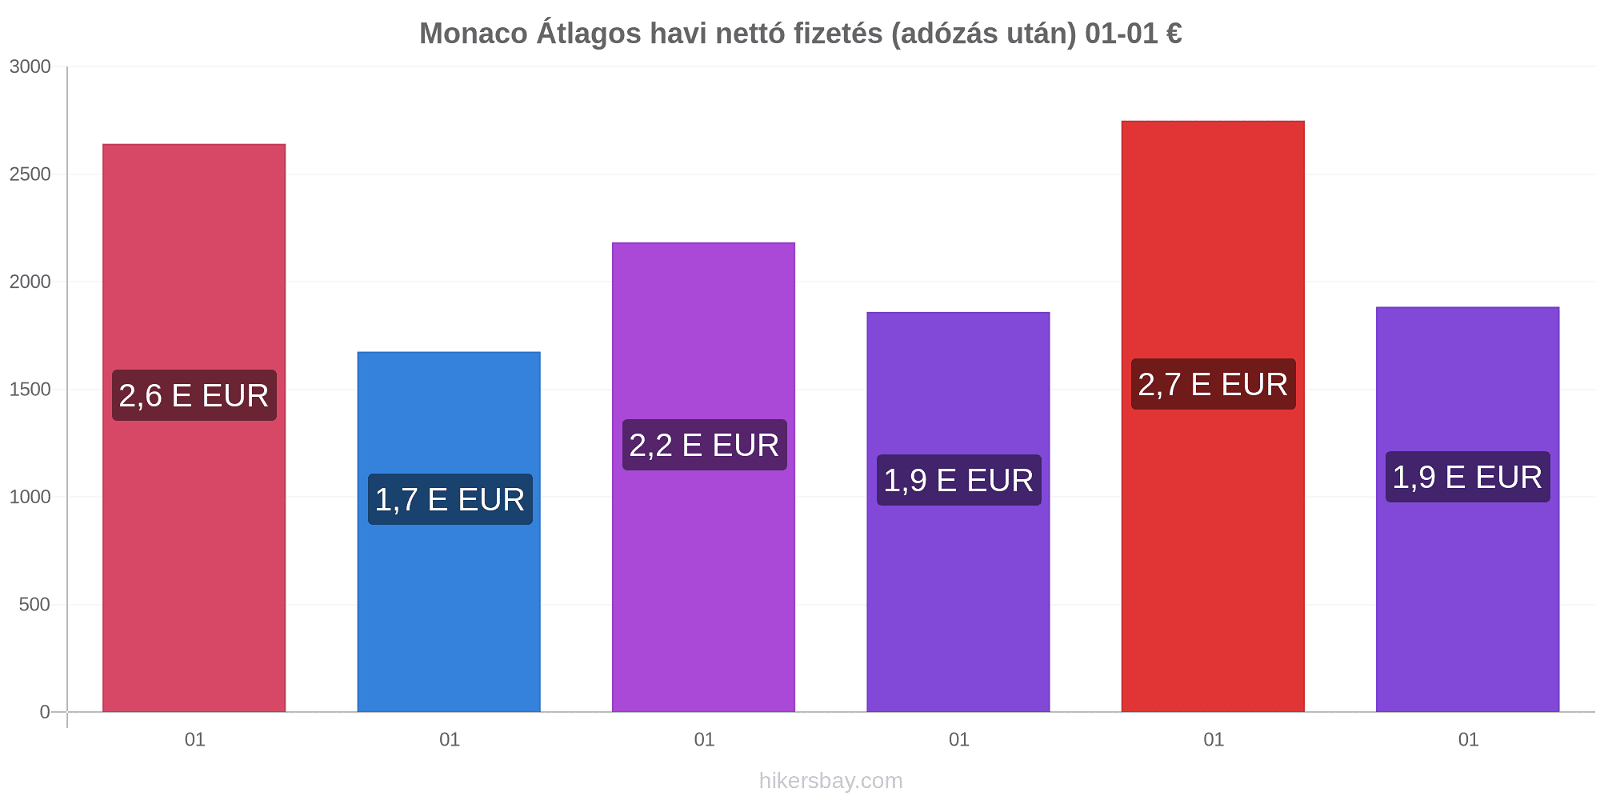 Monaco árváltozások Átlagos havi nettó fizetés (adózás után) hikersbay.com